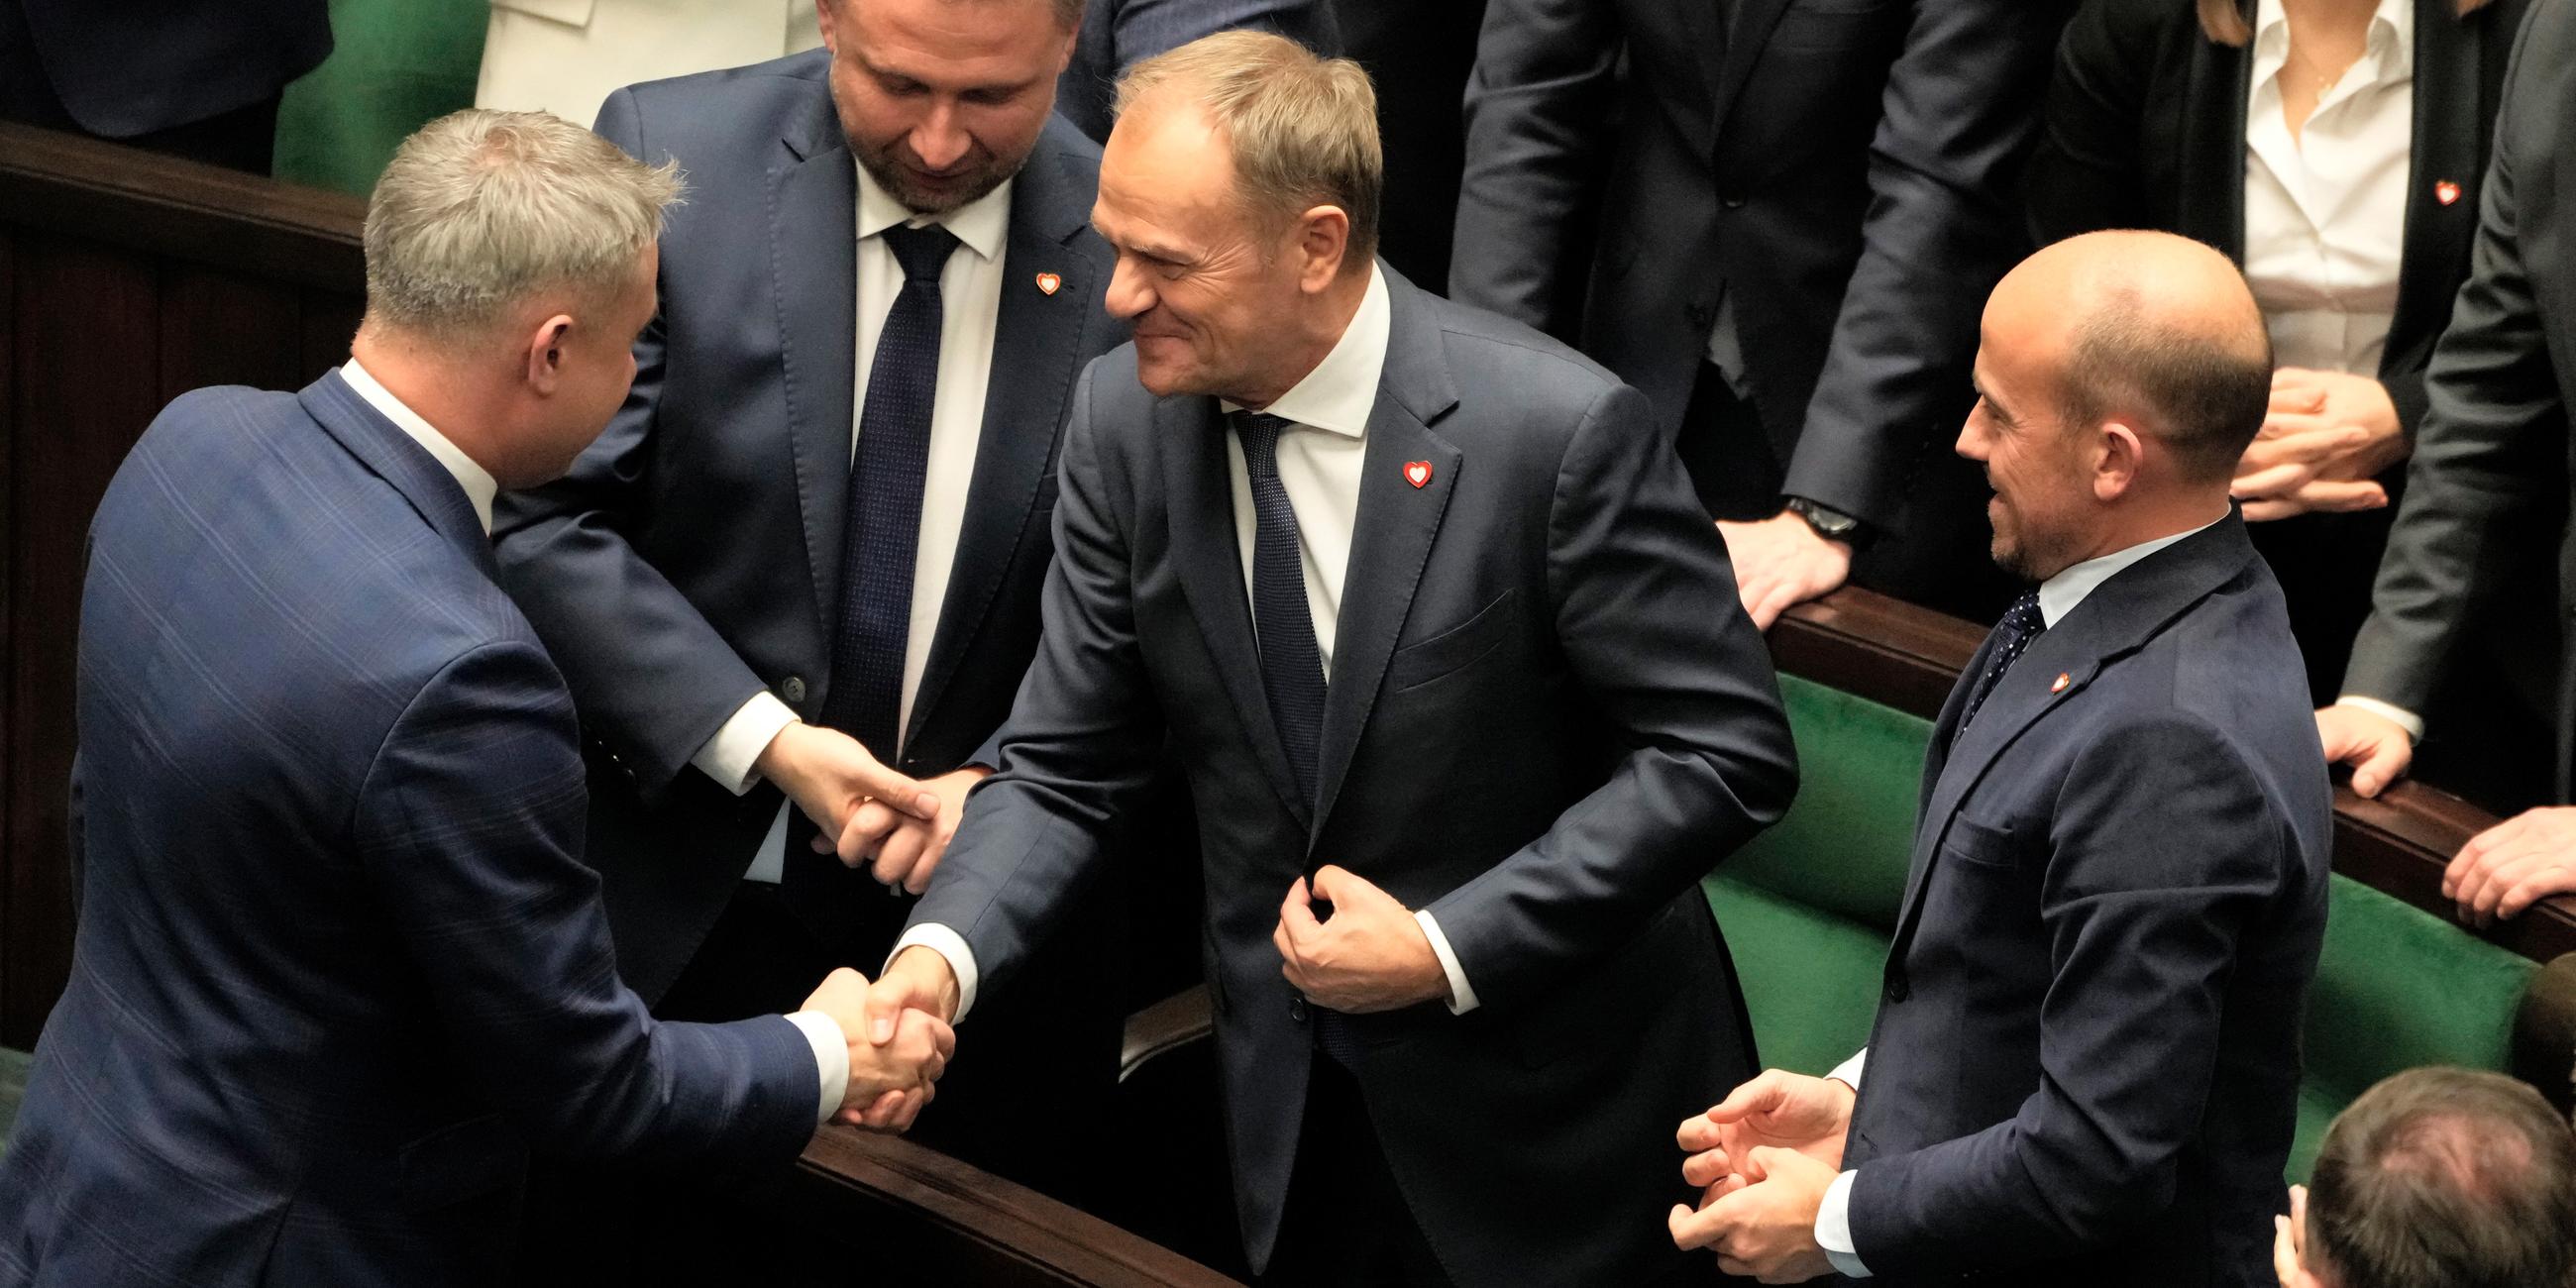 Mitglieder des Parlaments gratulieren Tusk nach seiner Wahl.